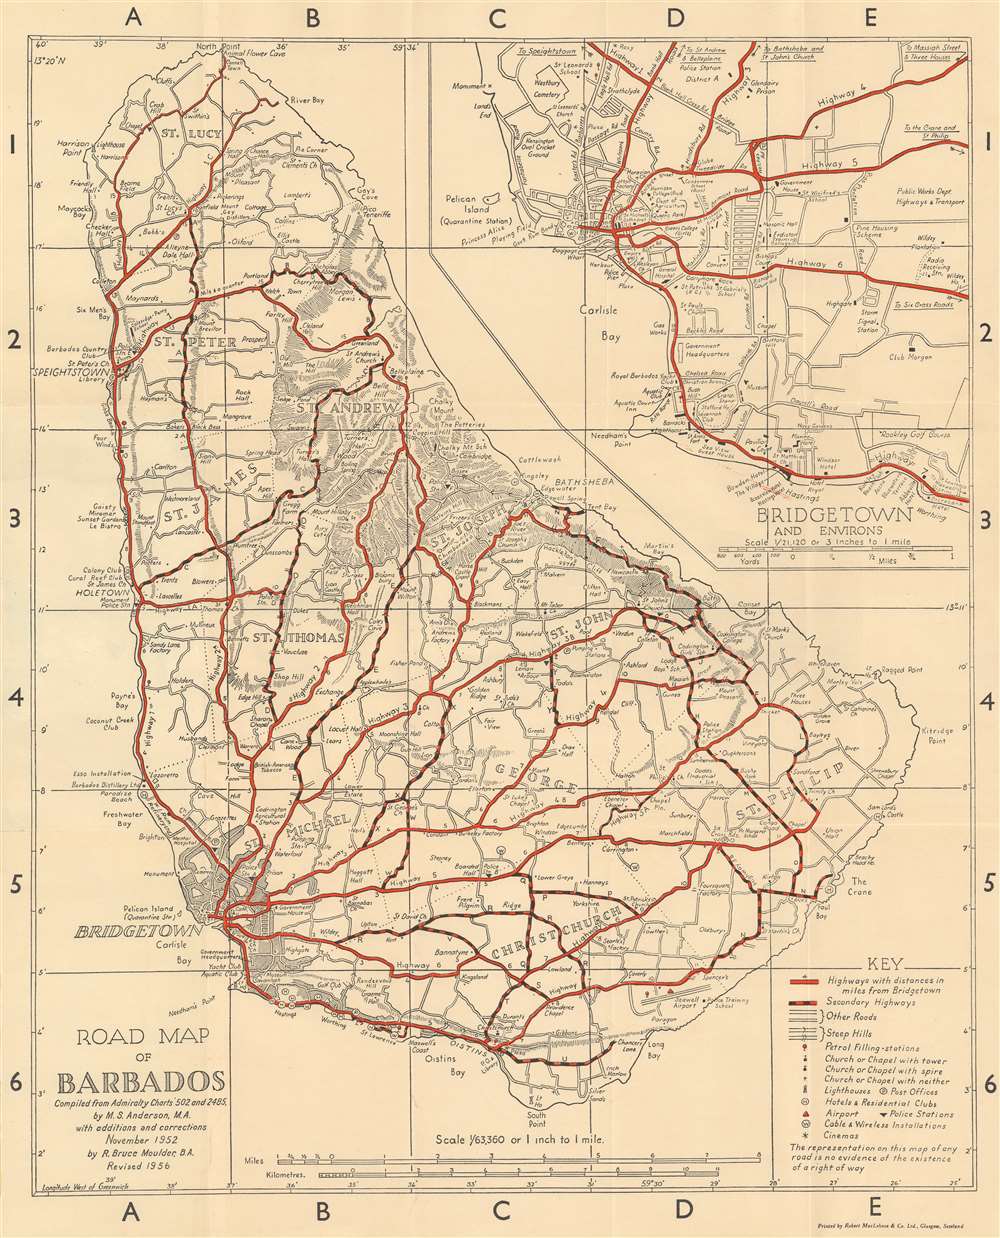 Road Map Of Barbados - Arlene Natassia